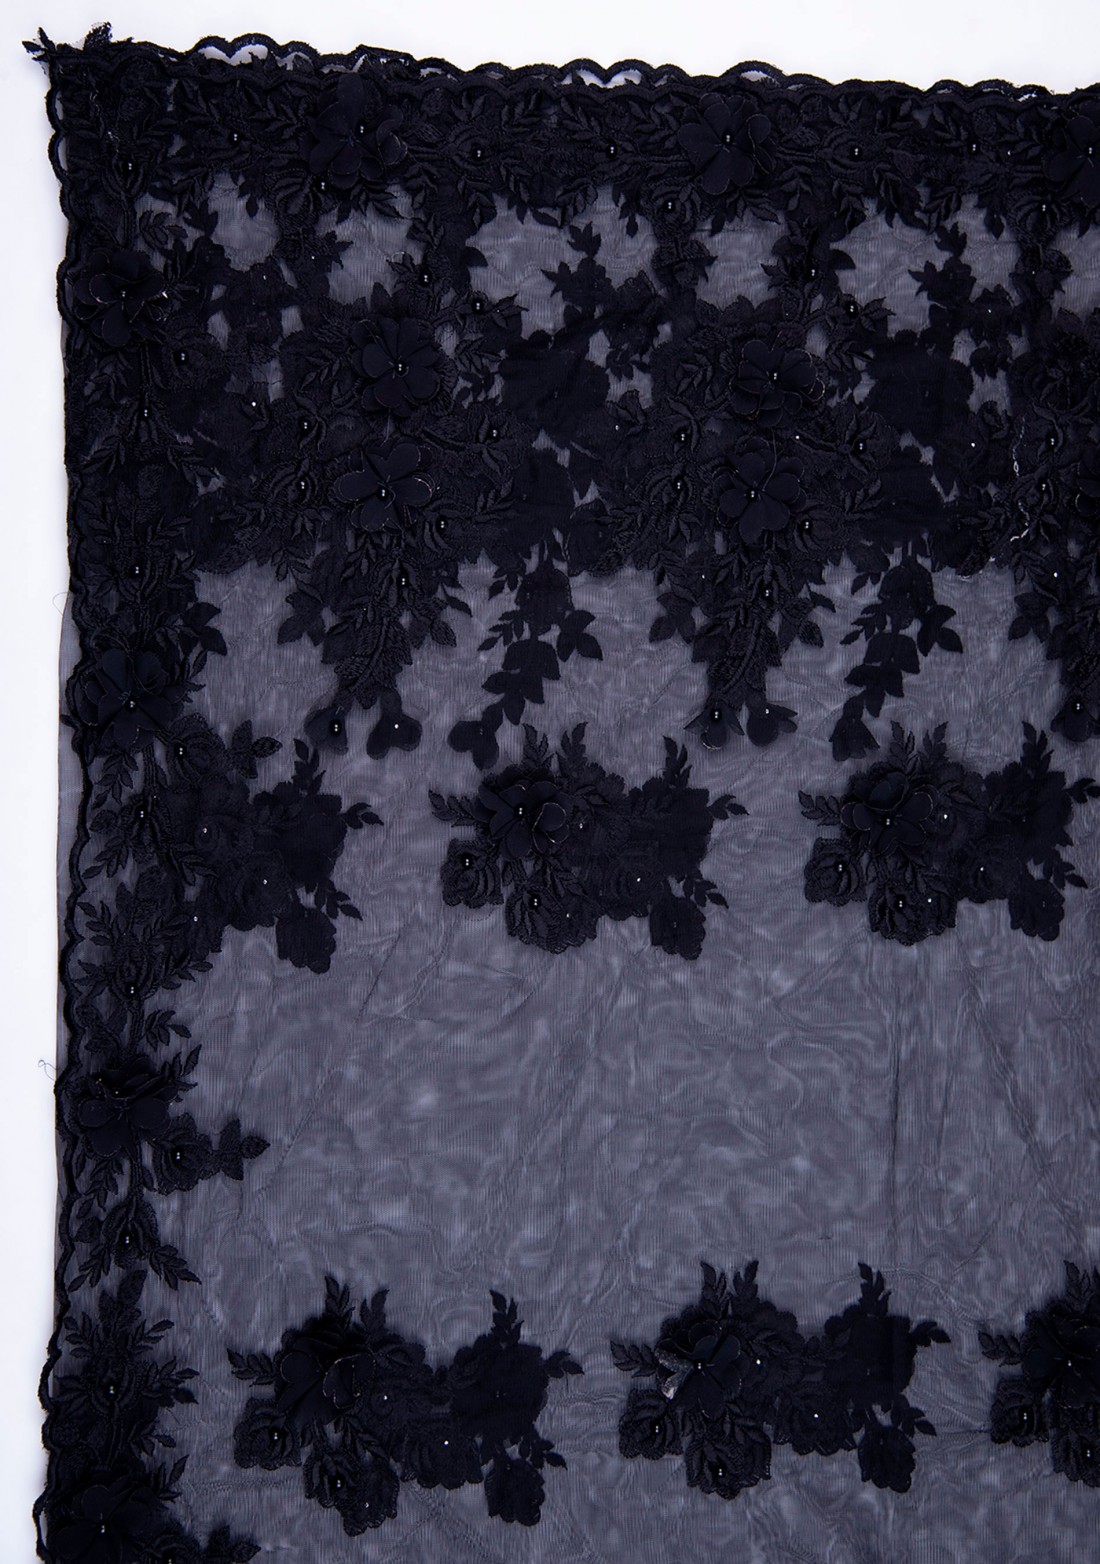 Applique Work Black Embroidered Net Saree